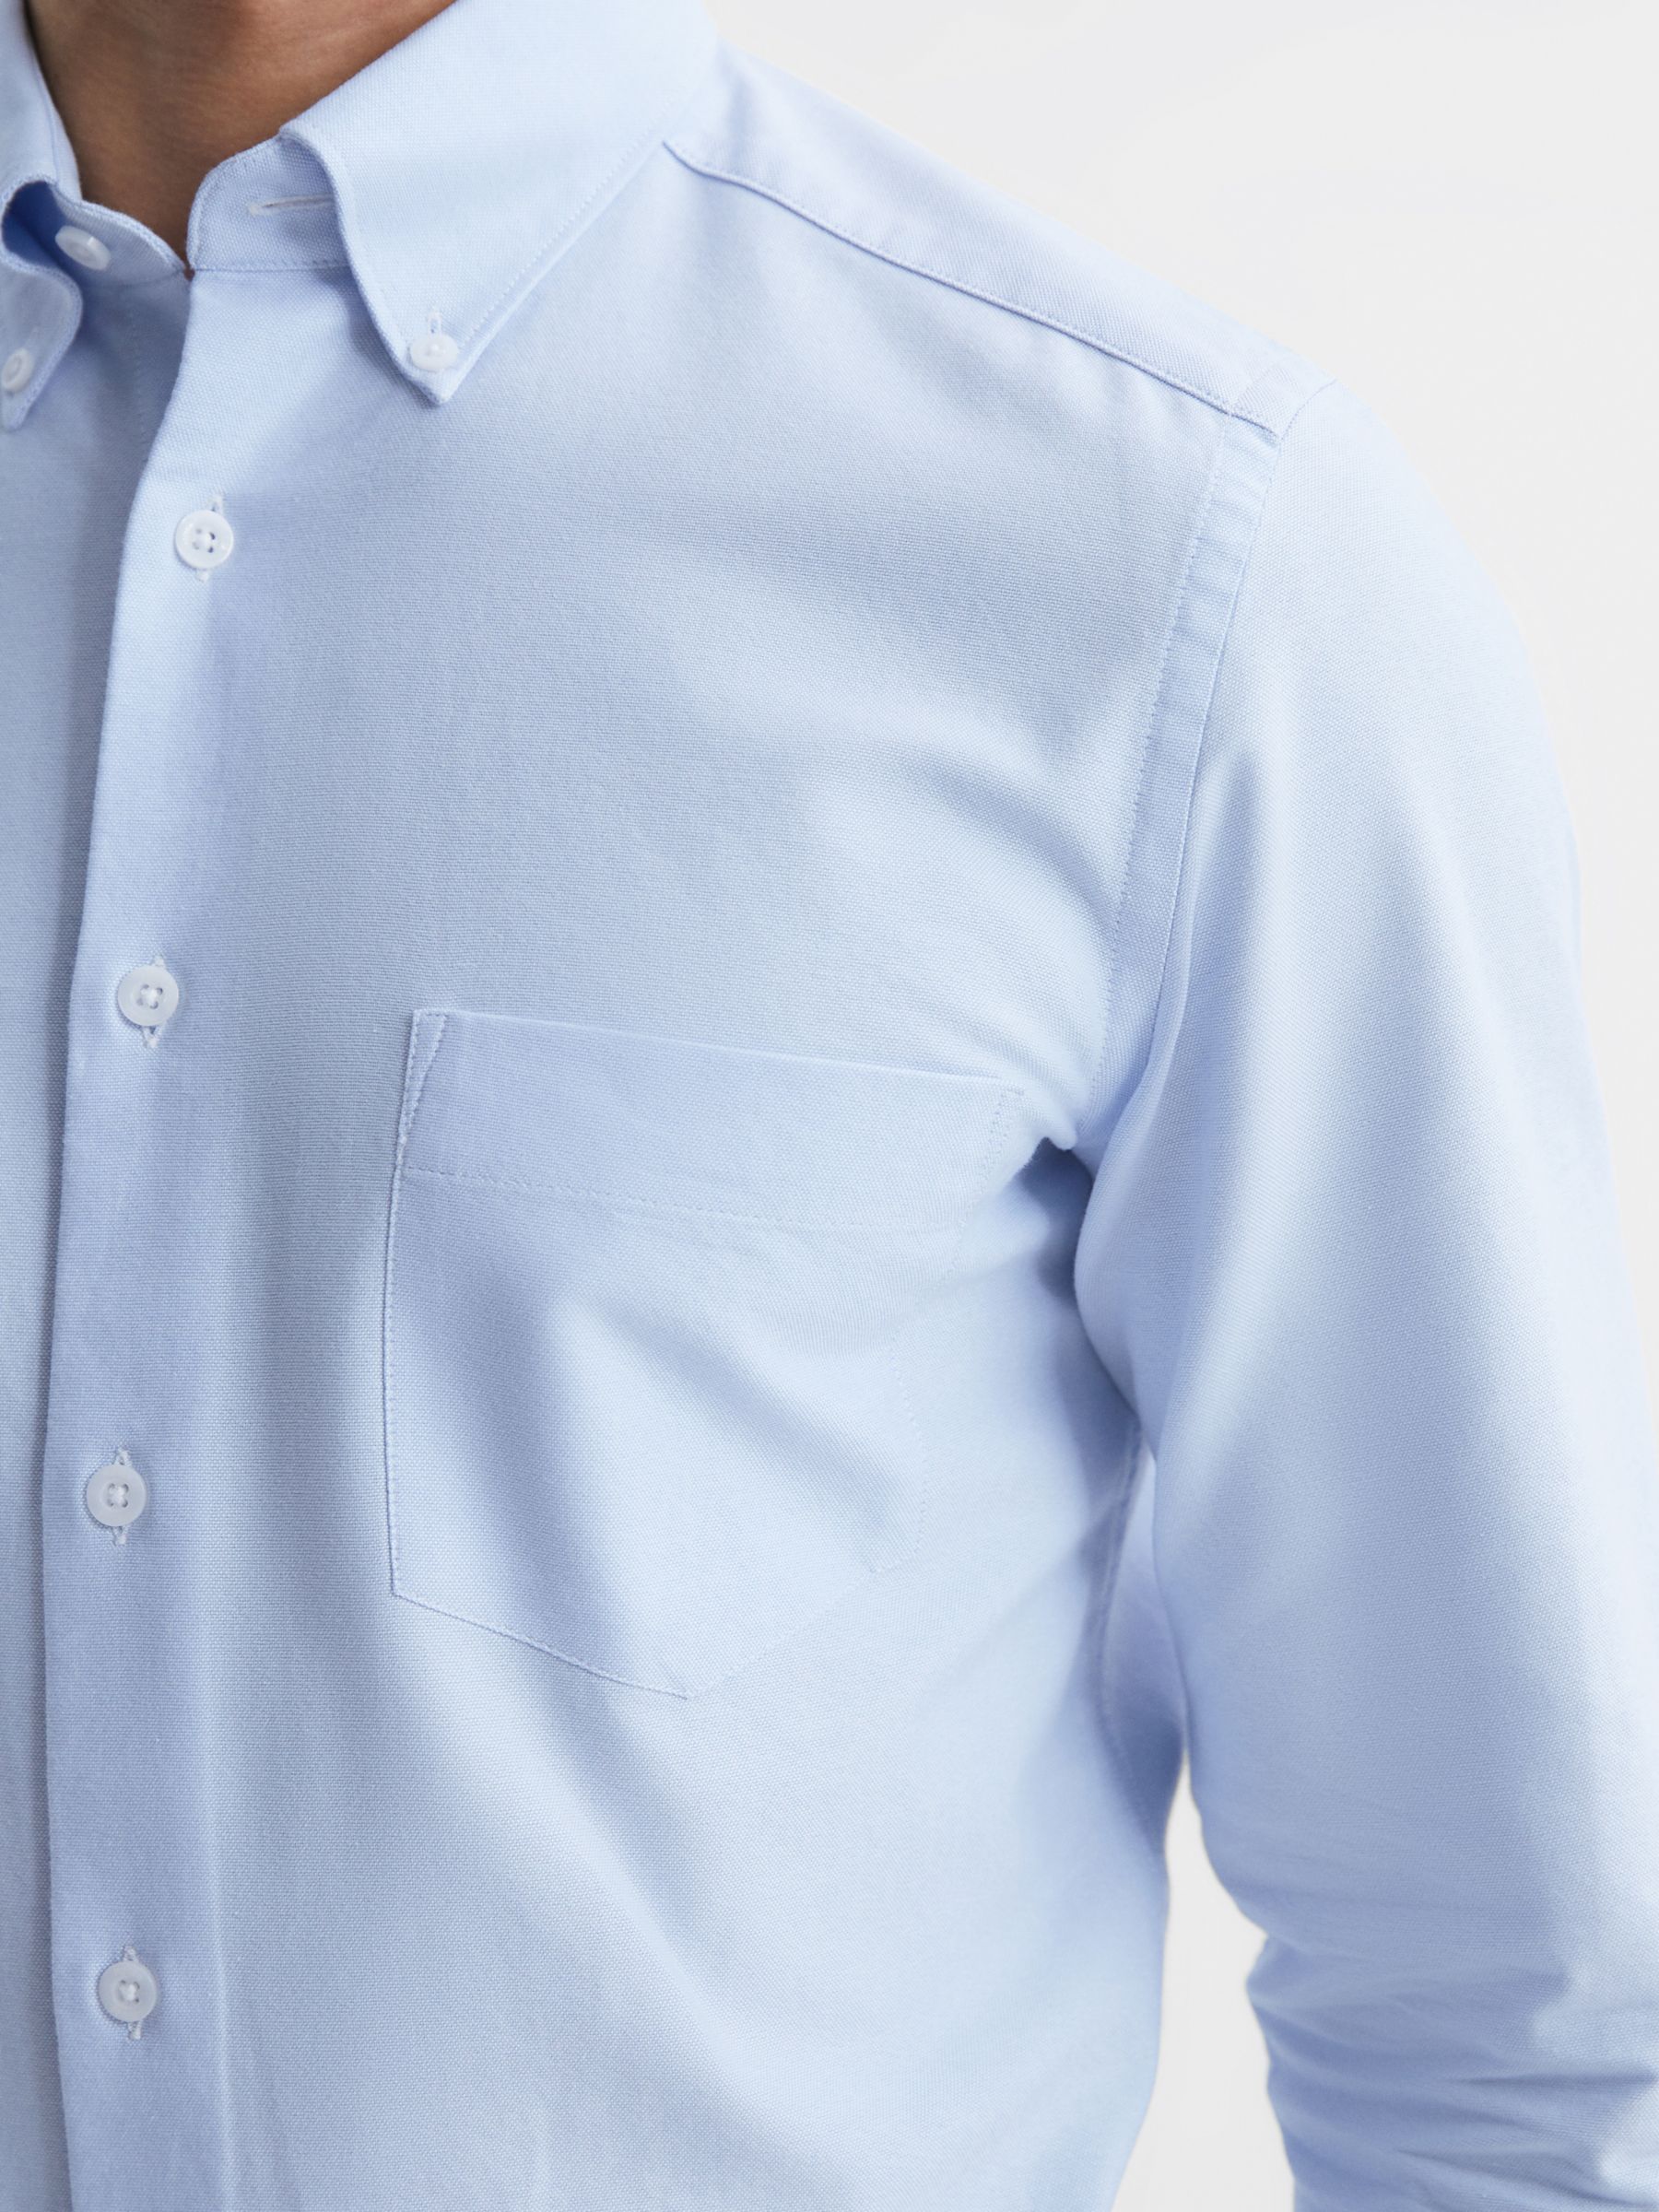 Reiss Greenwich Long Sleeved Shirt, Soft Blue, XS